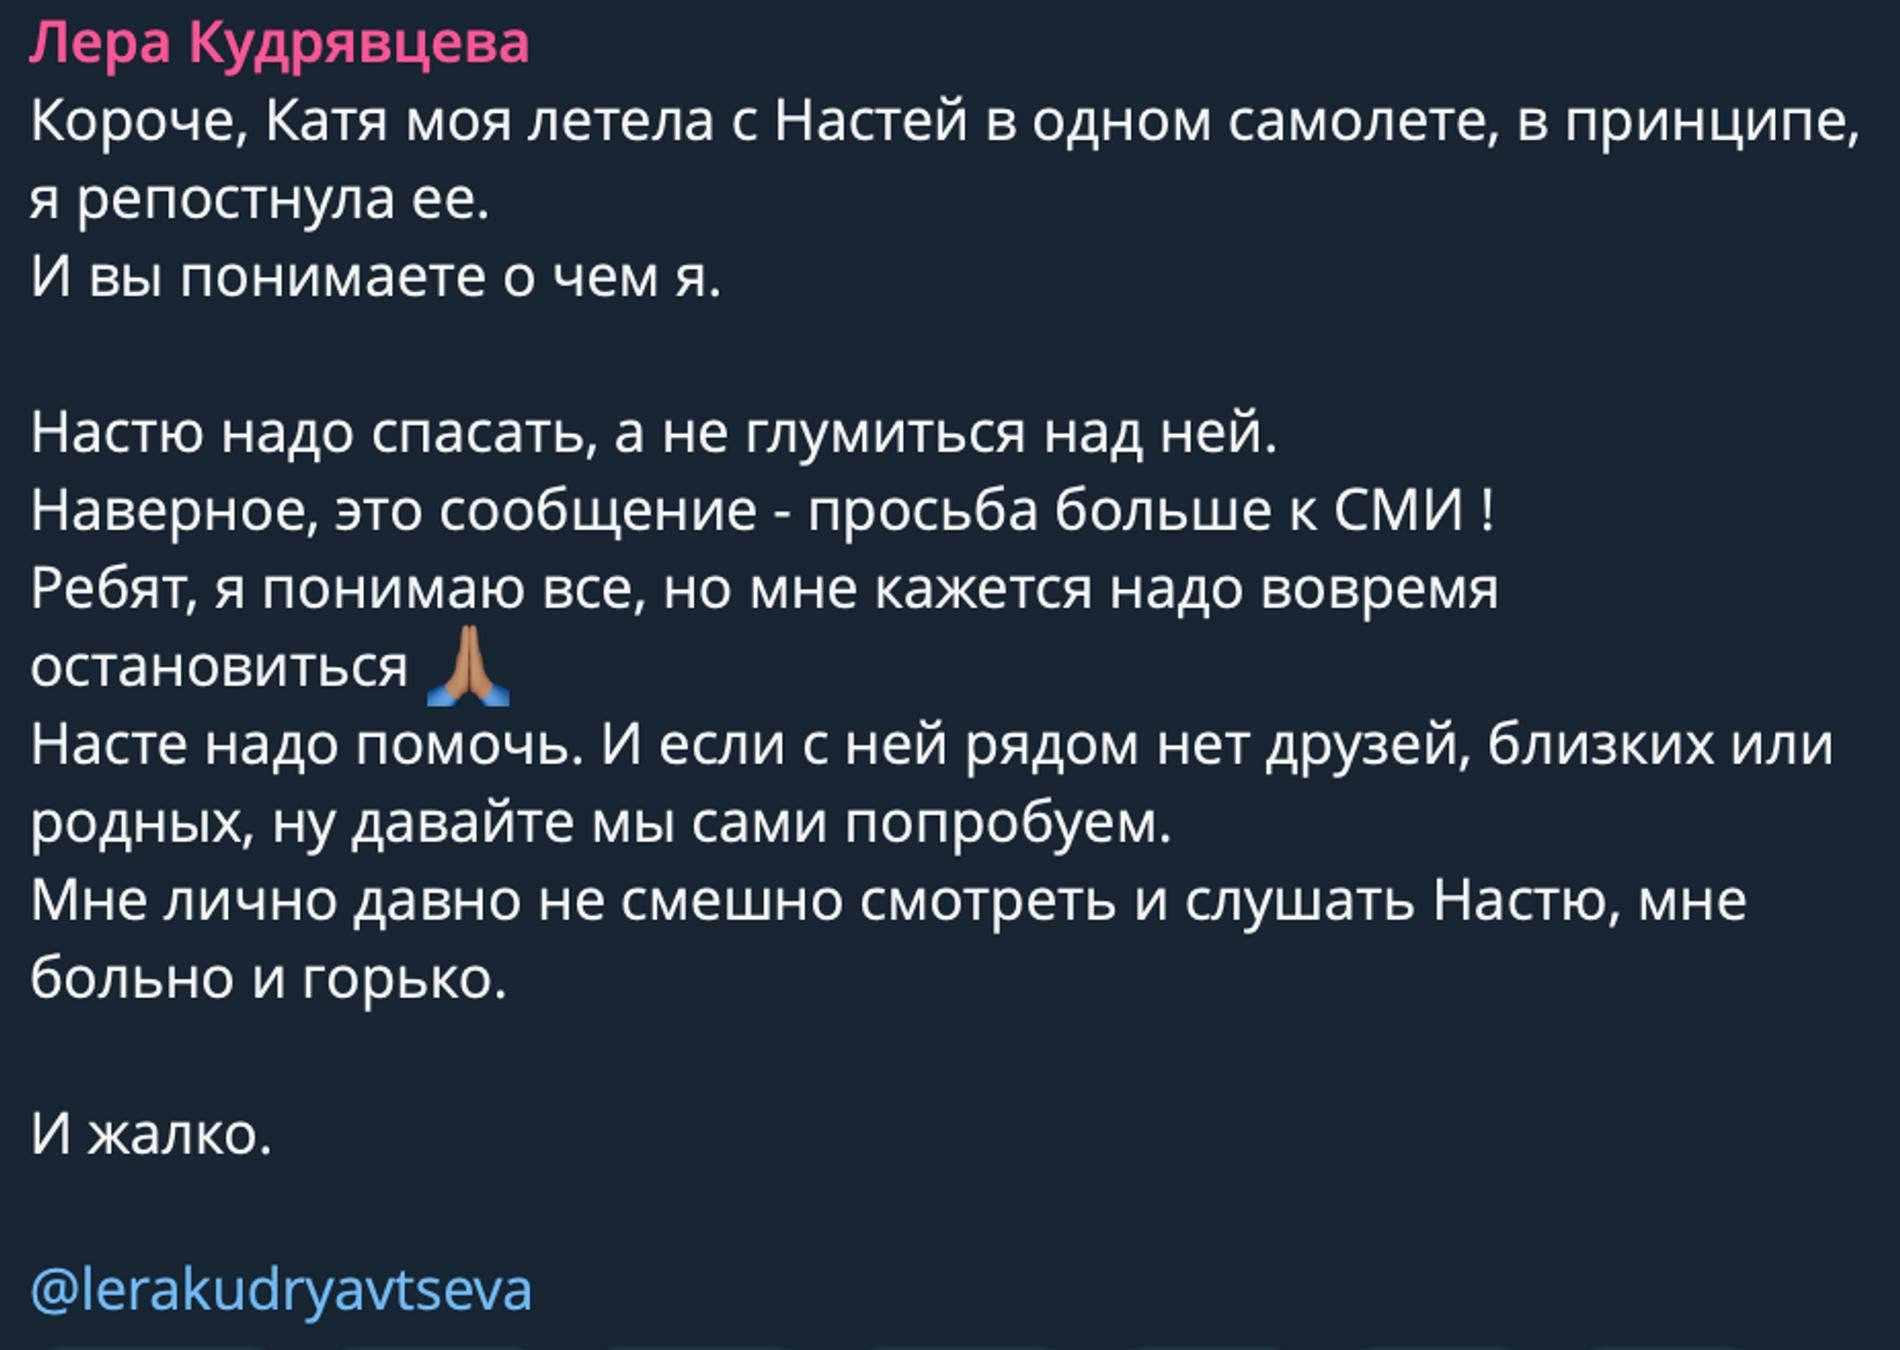 Фото: Telegram-канал Леры Кудрявцевой